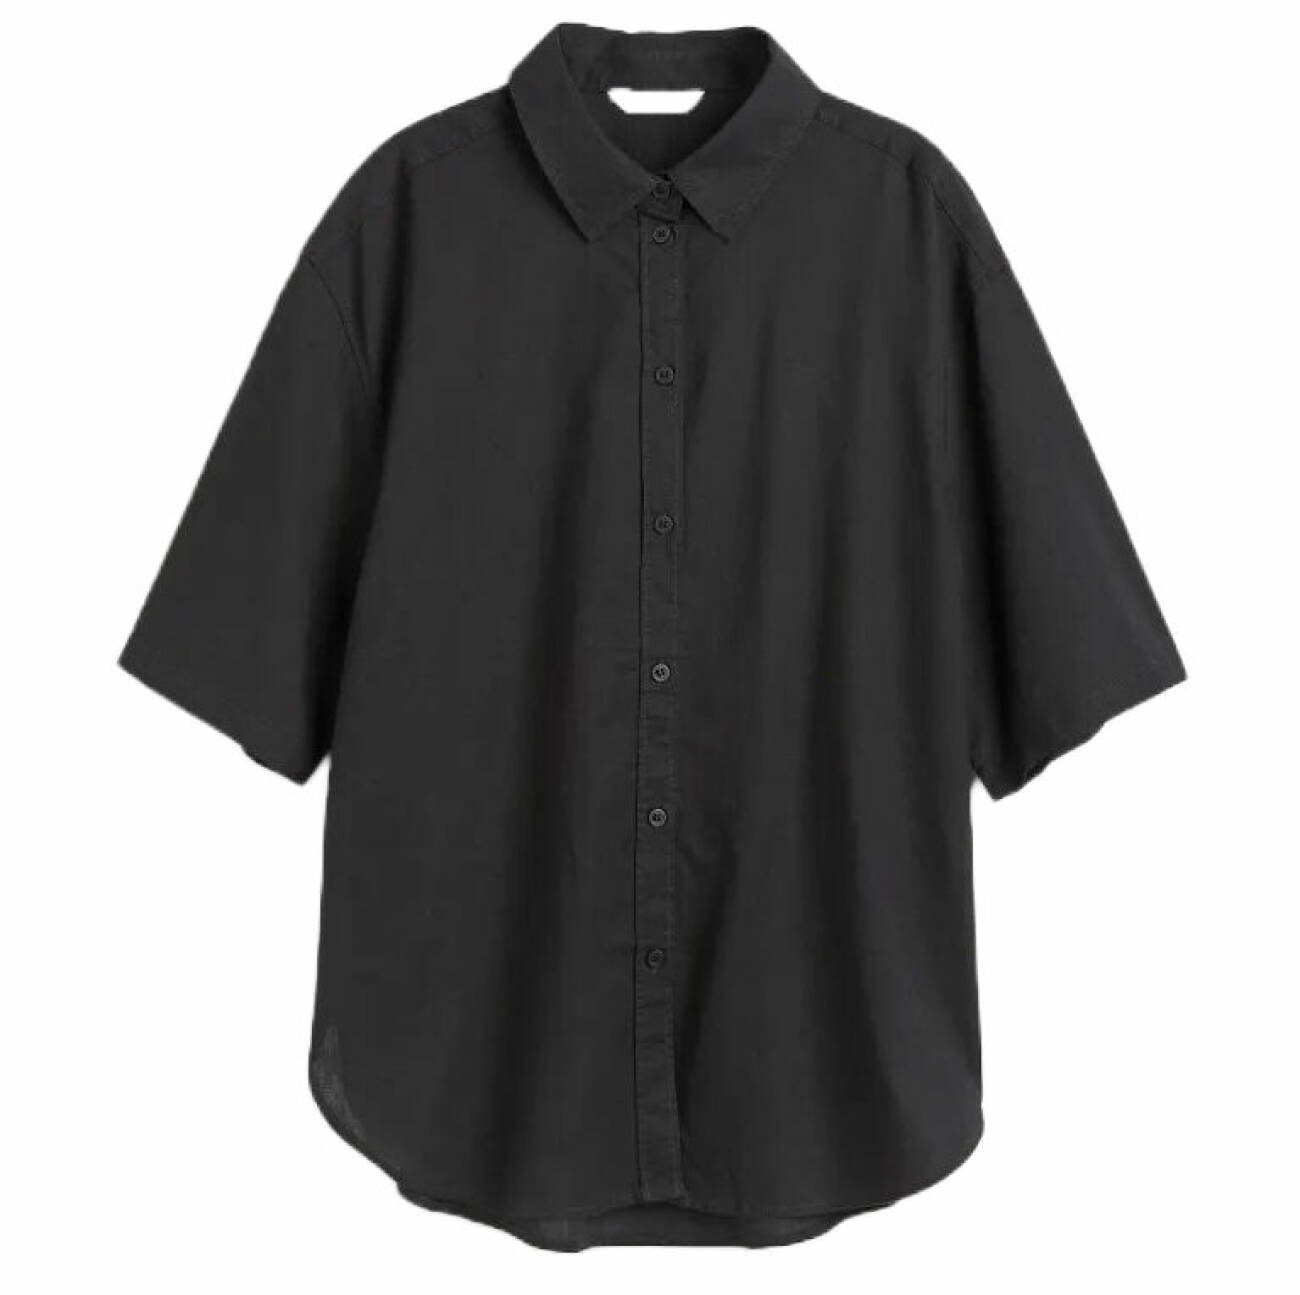 kortärmad skjorta i svart nyans tillverkad i linne och bomull från H&amp;M